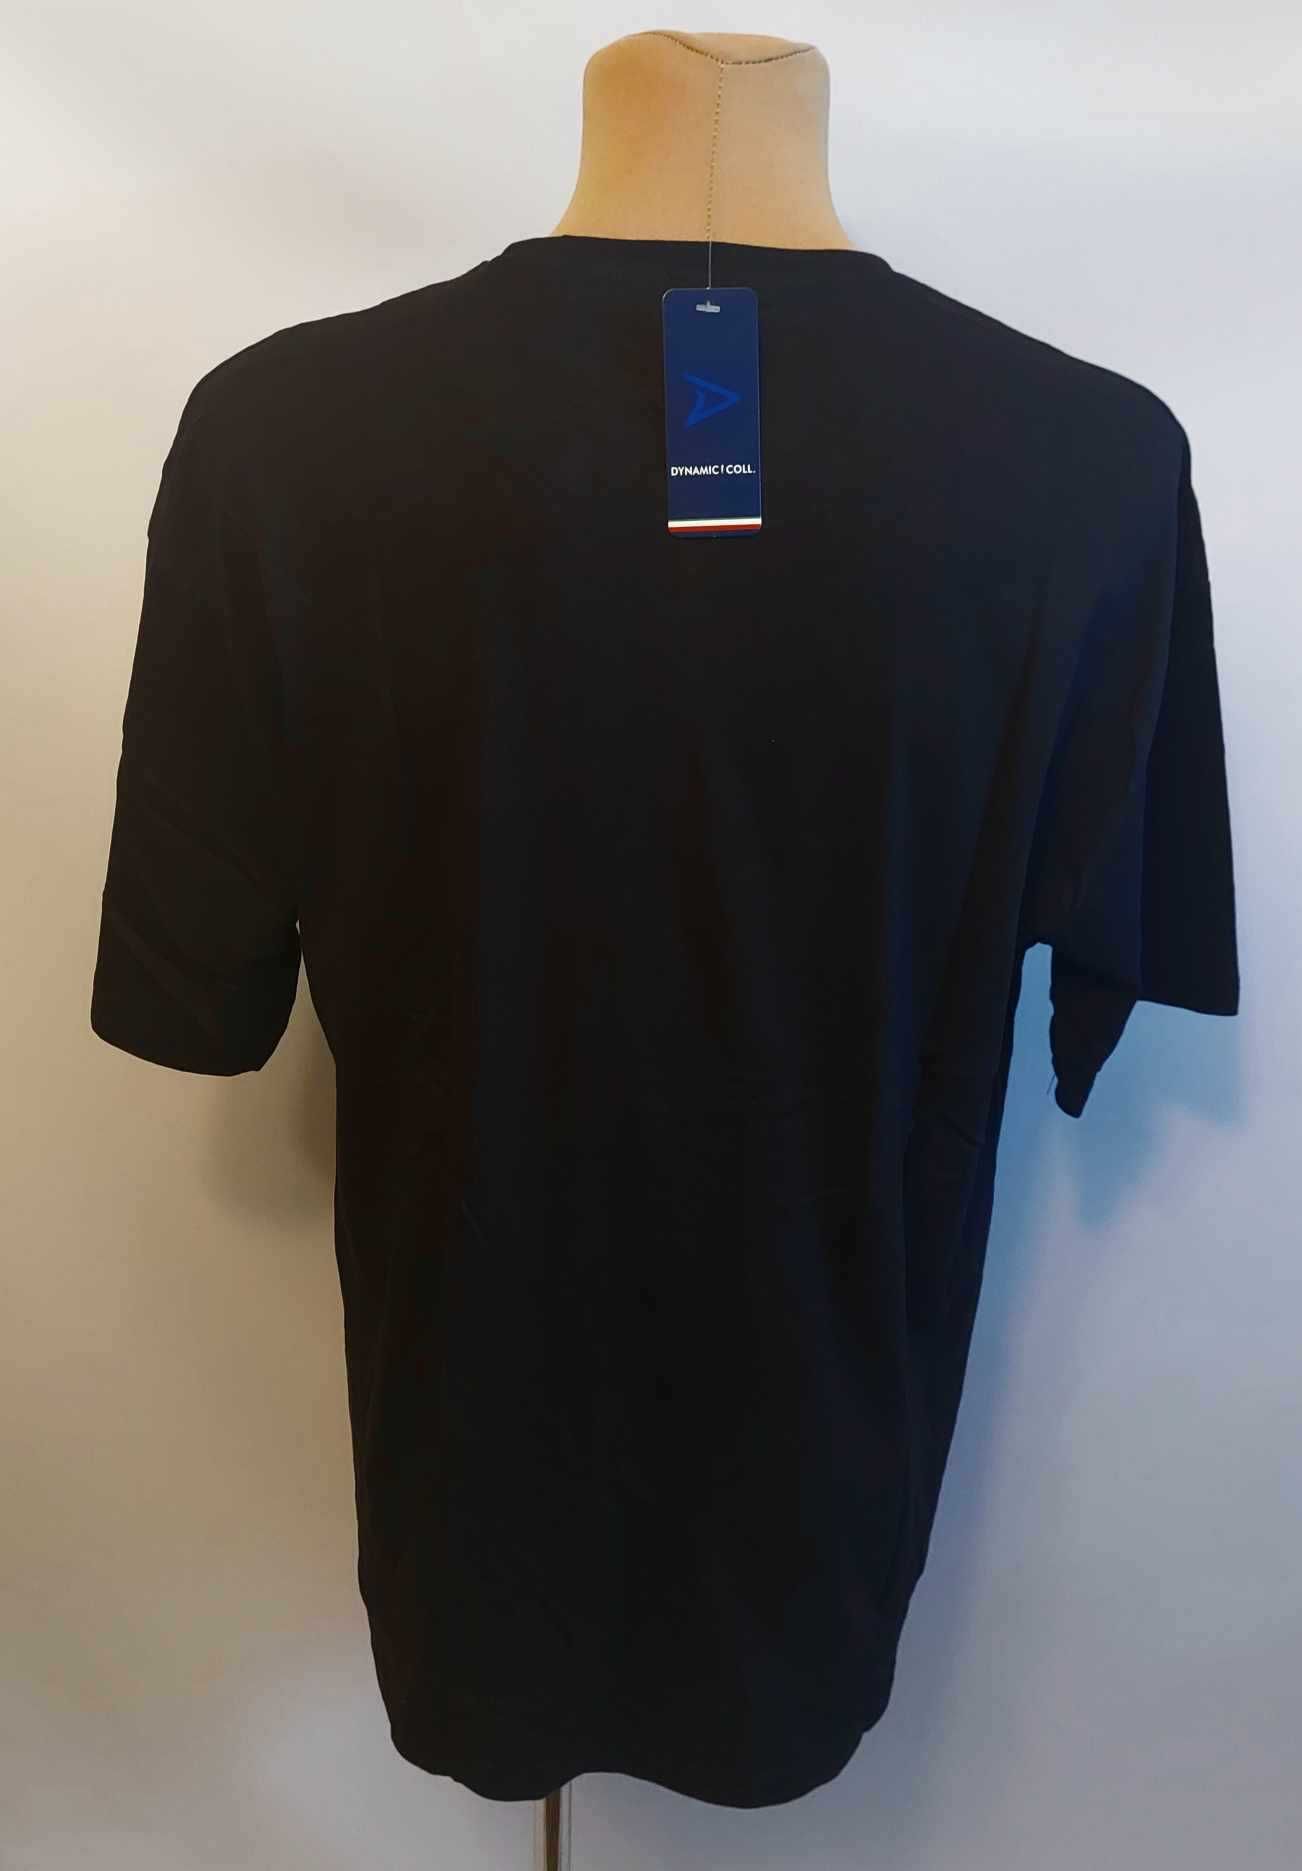 Koszulka męska bawełna t-shirt męski turecki DYNAMIC 5XL obwód 126 cm